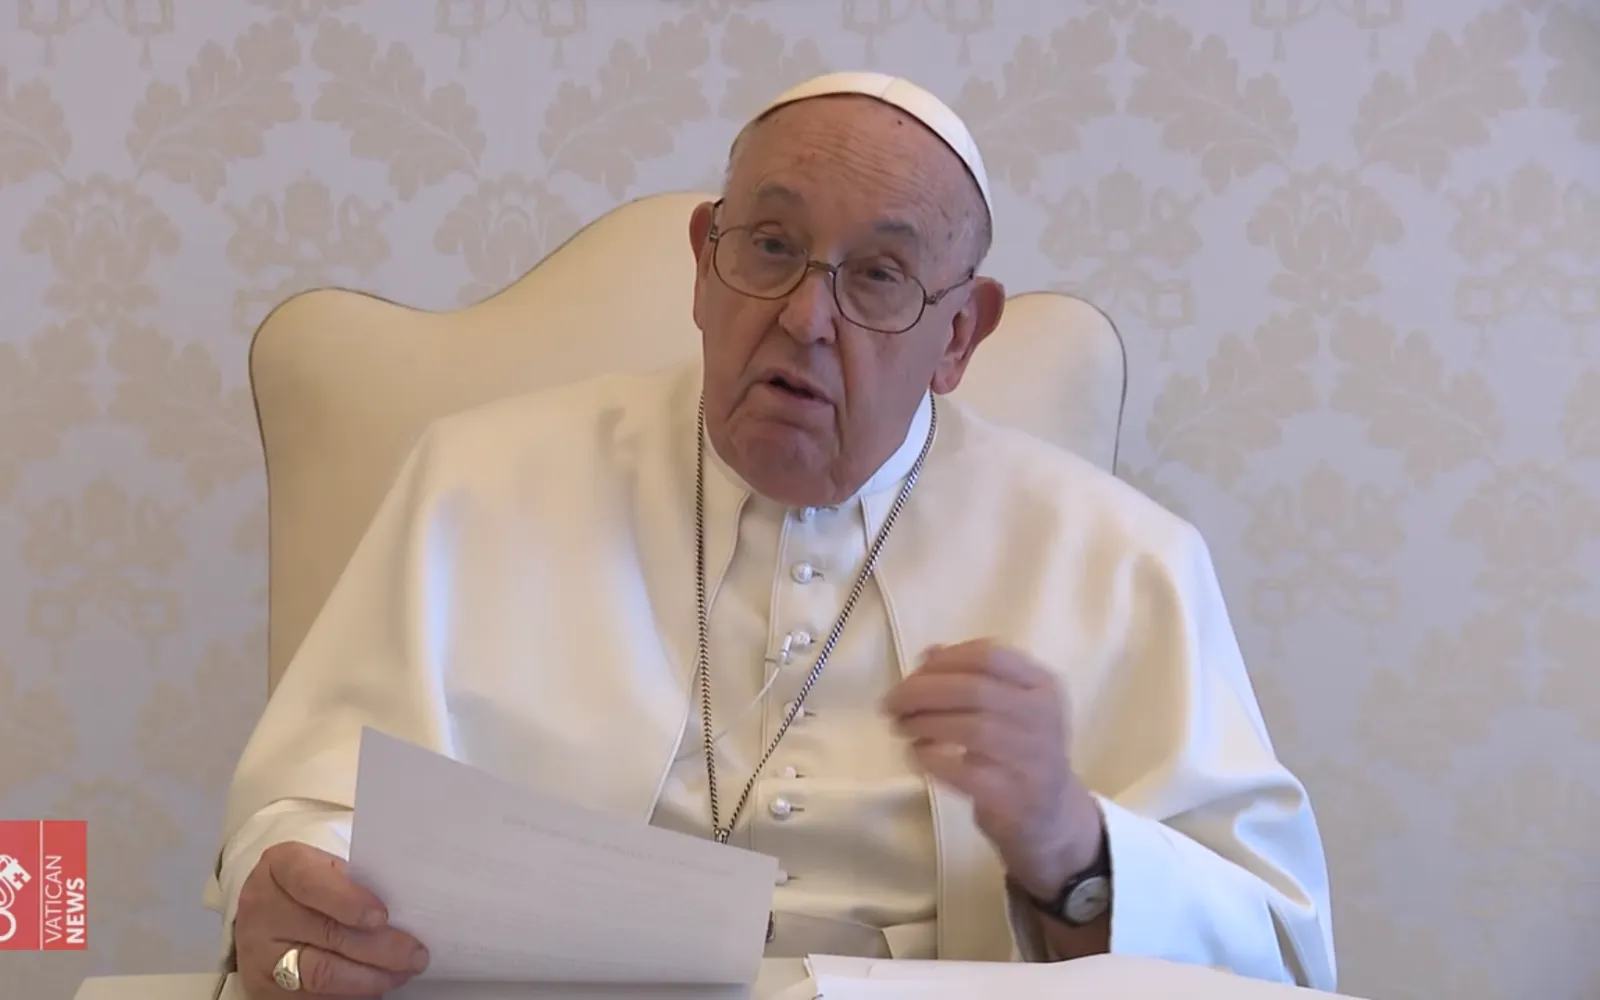 El Papa Francisco apoya un concierto por la paz impulsado por una emisora de los obispos españoles.?w=200&h=150